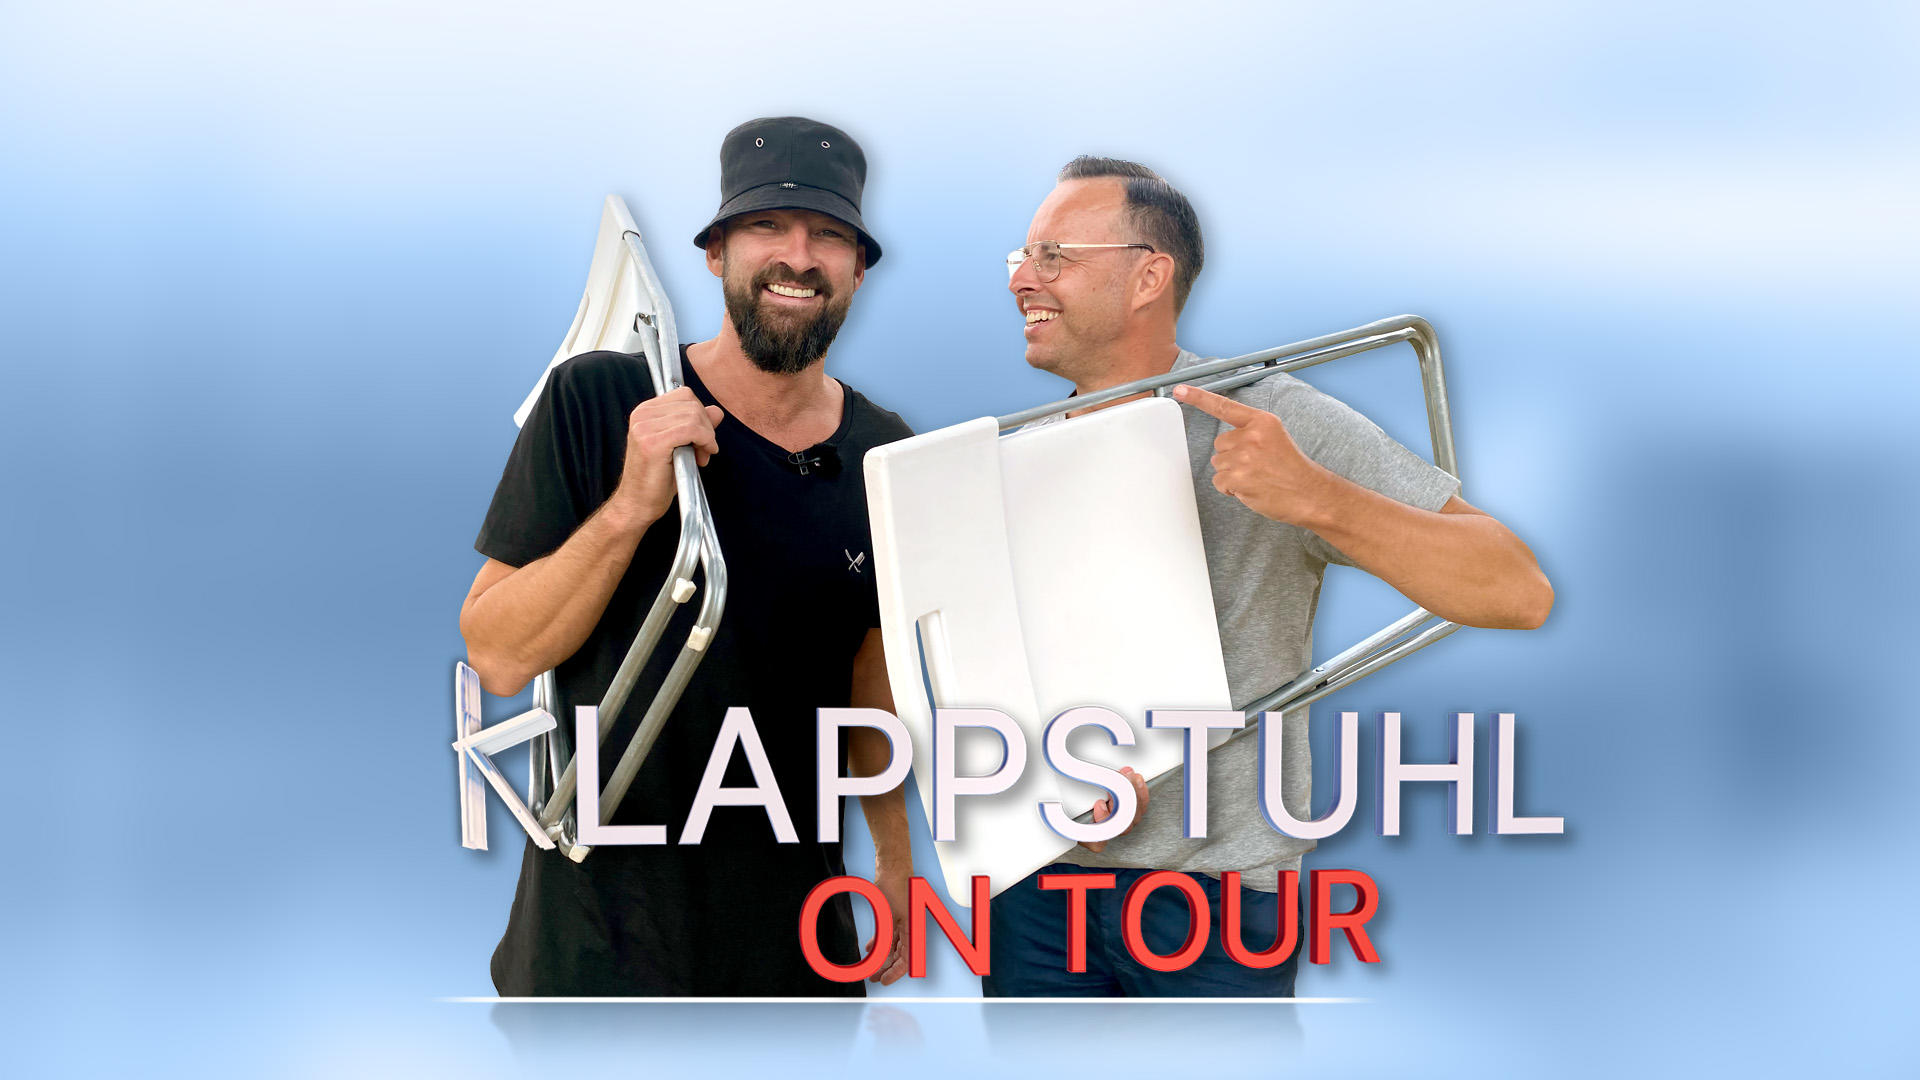 Till Quitmann trifft Gentleman Klappstuhl on Tour